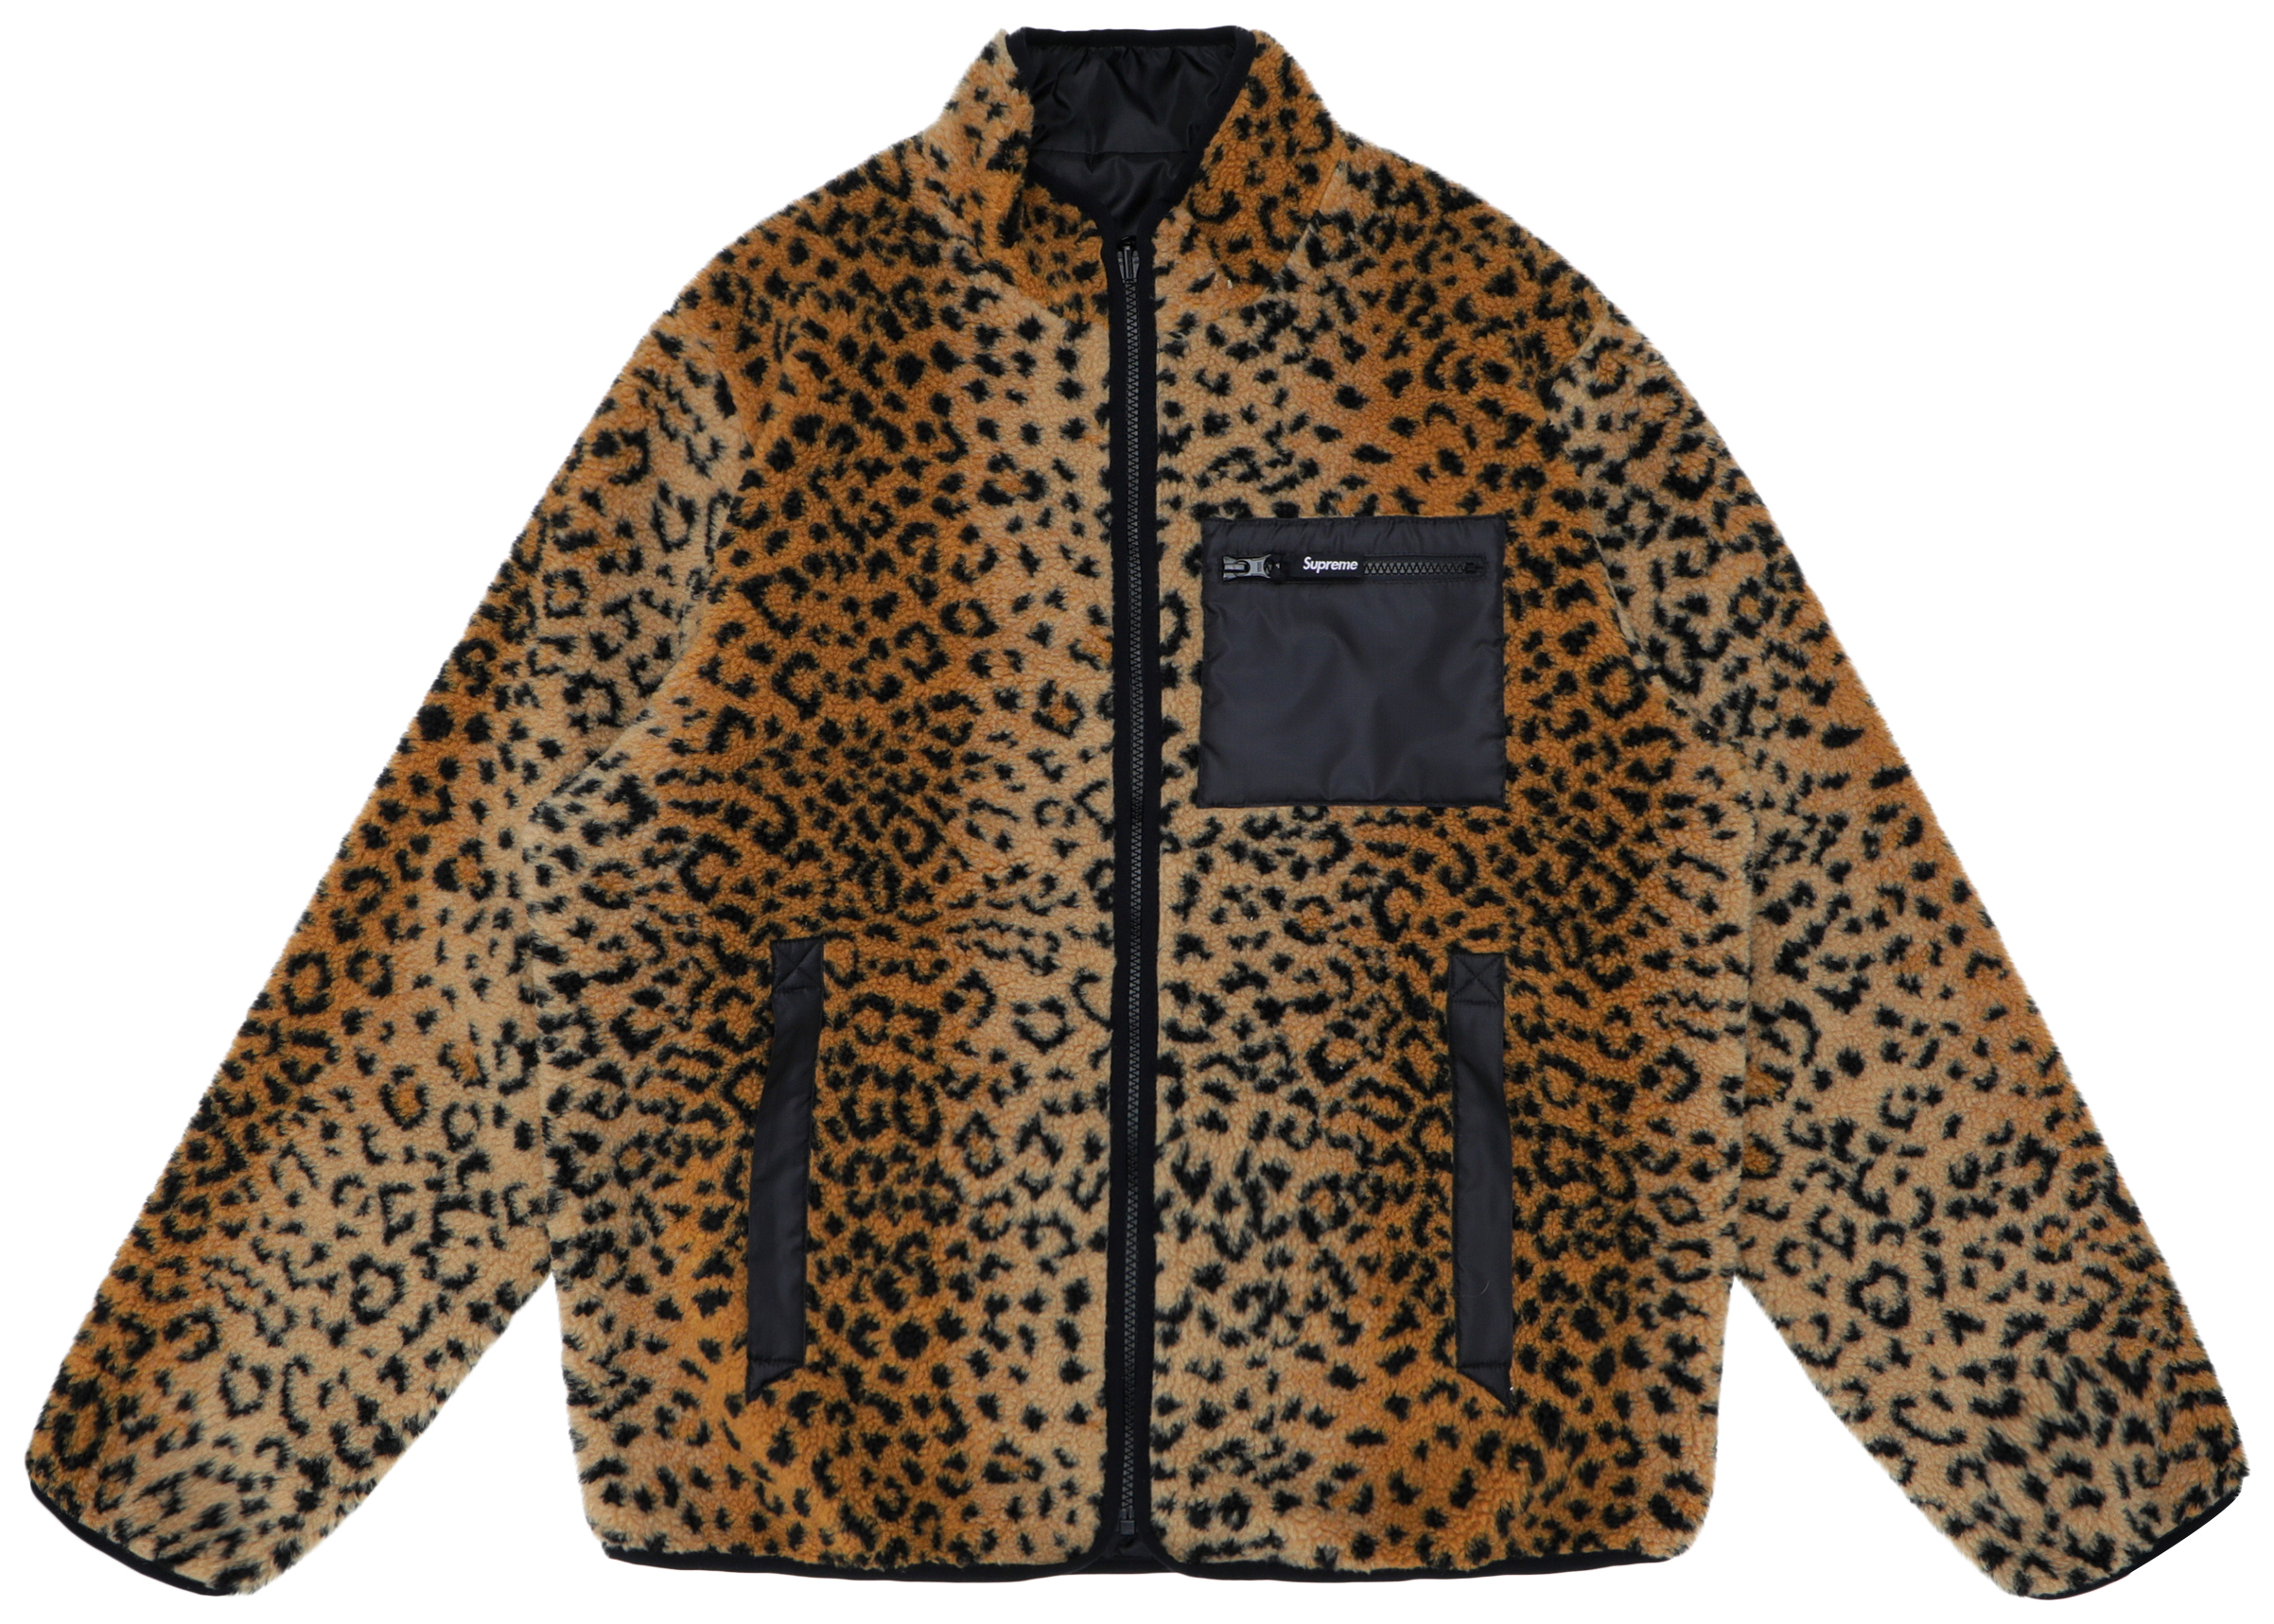 north face supreme leopard print jacket for sale